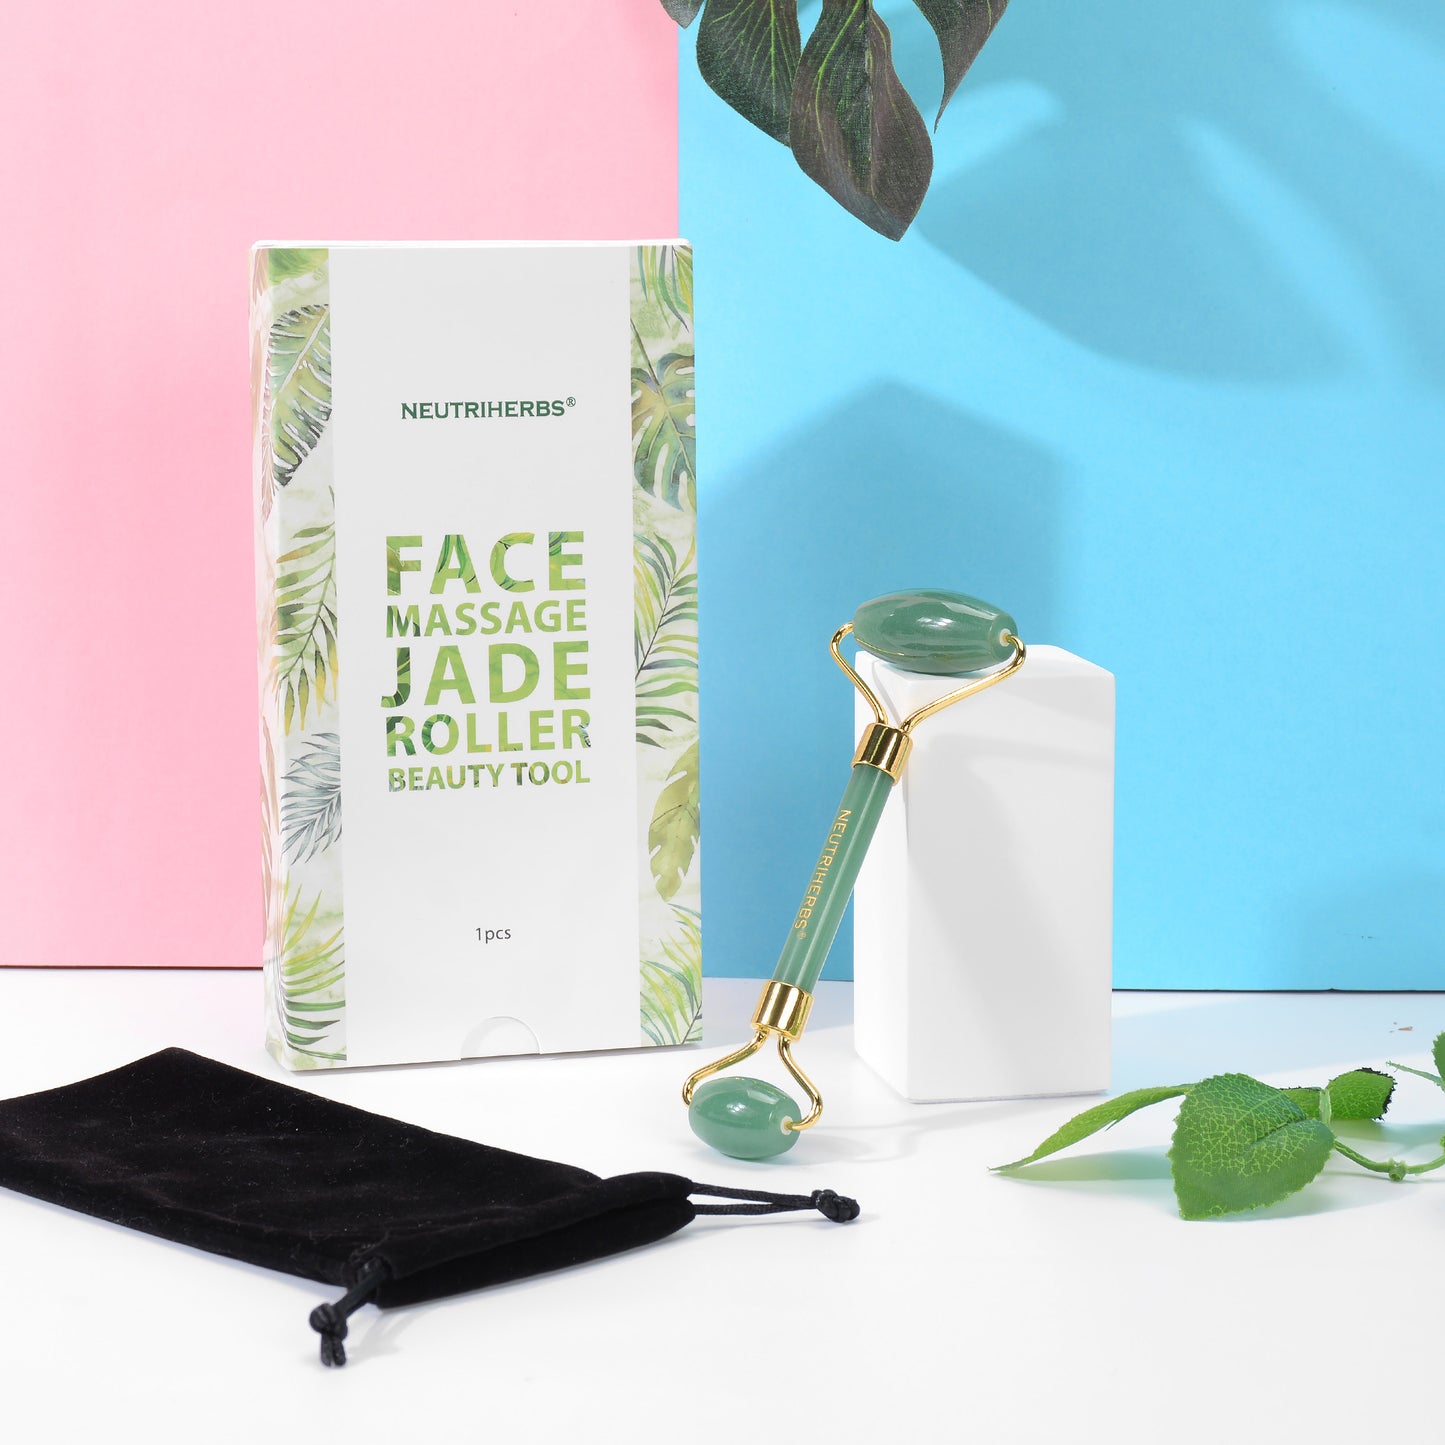 Rouleau de Jade pour massage du visage aux Neutriherbes